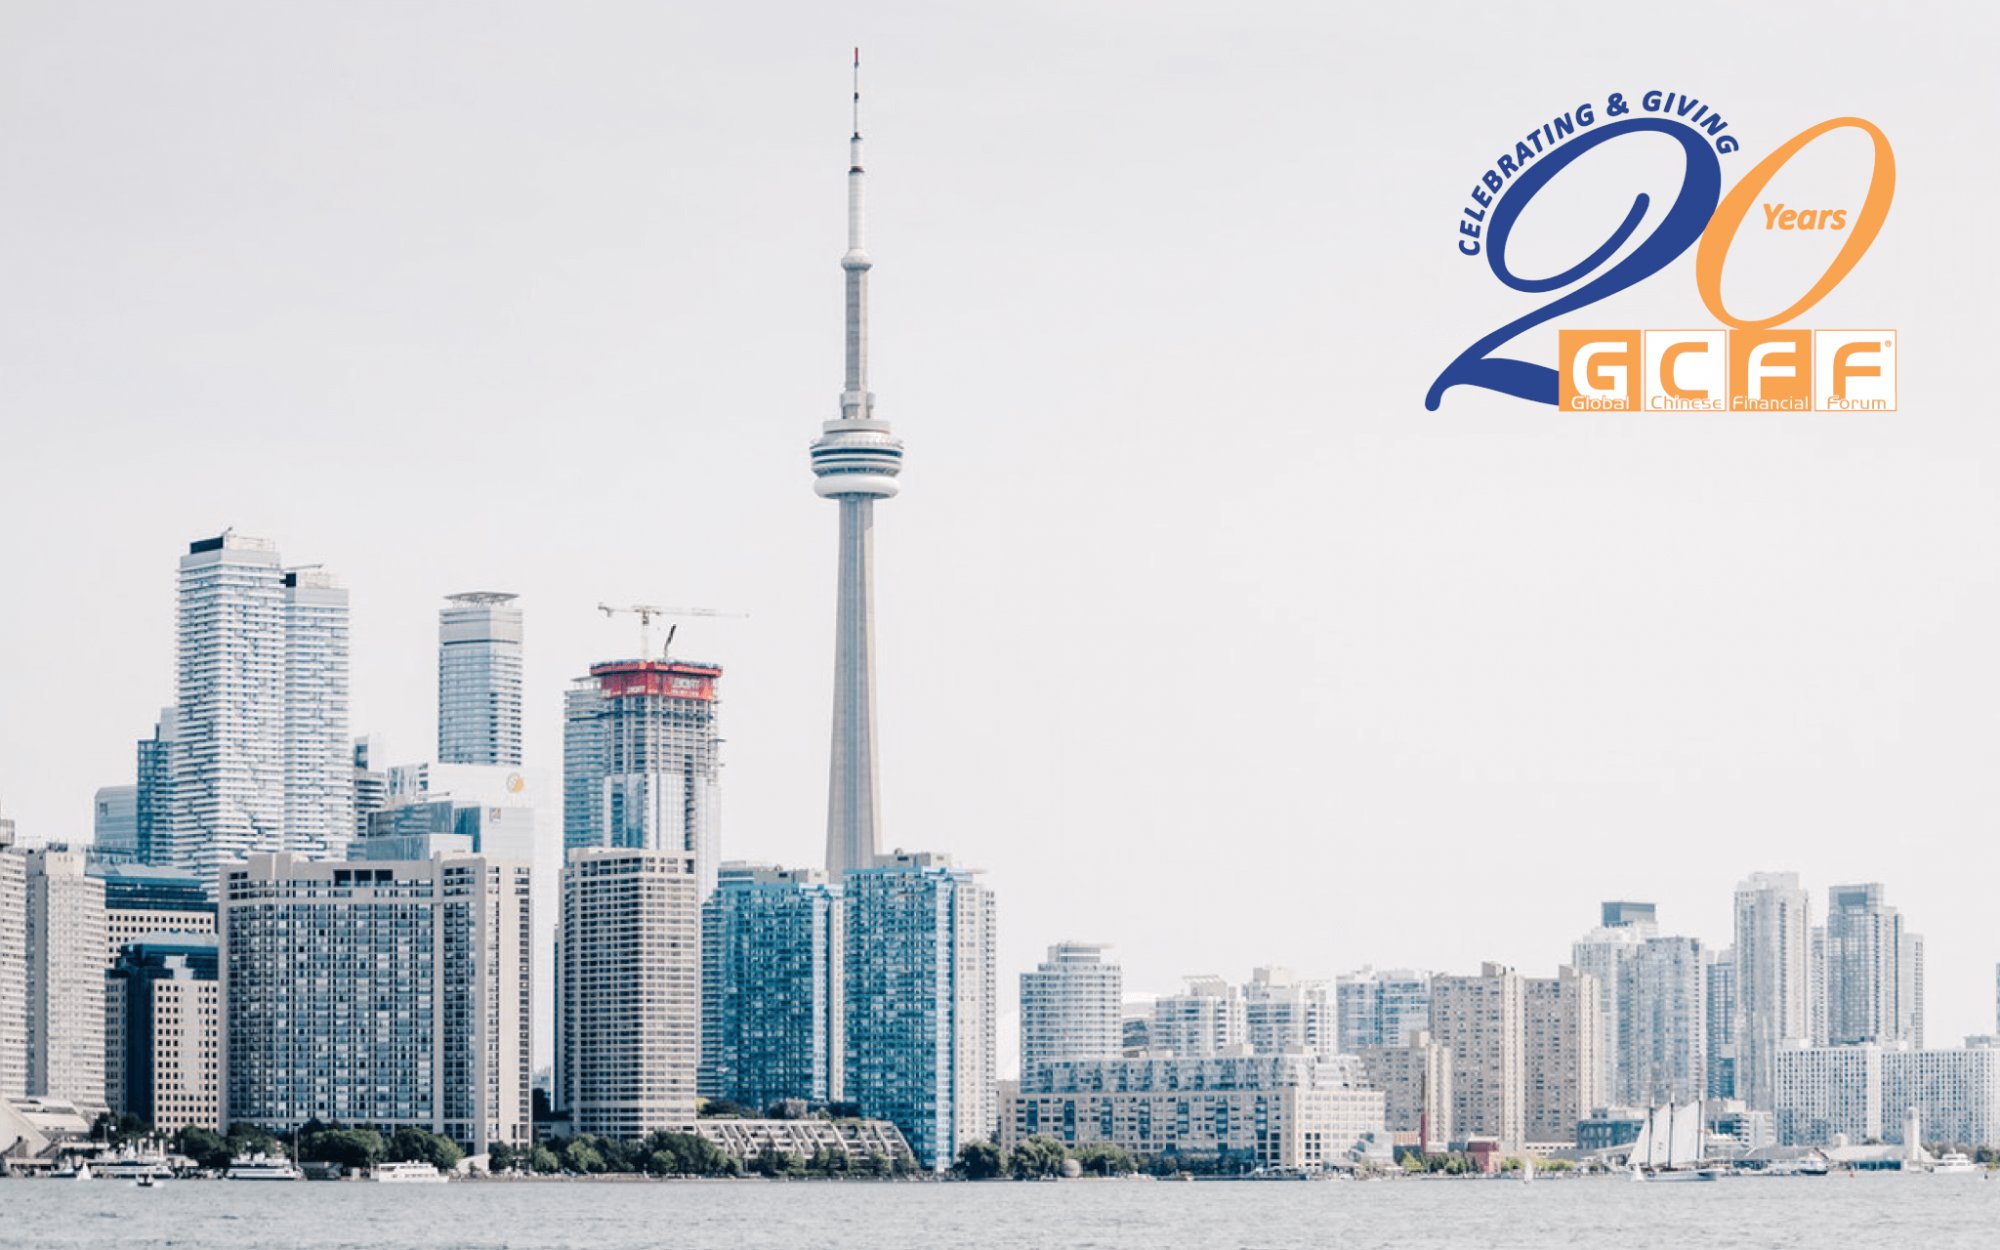 20th Annual GCFF Toronto Conference